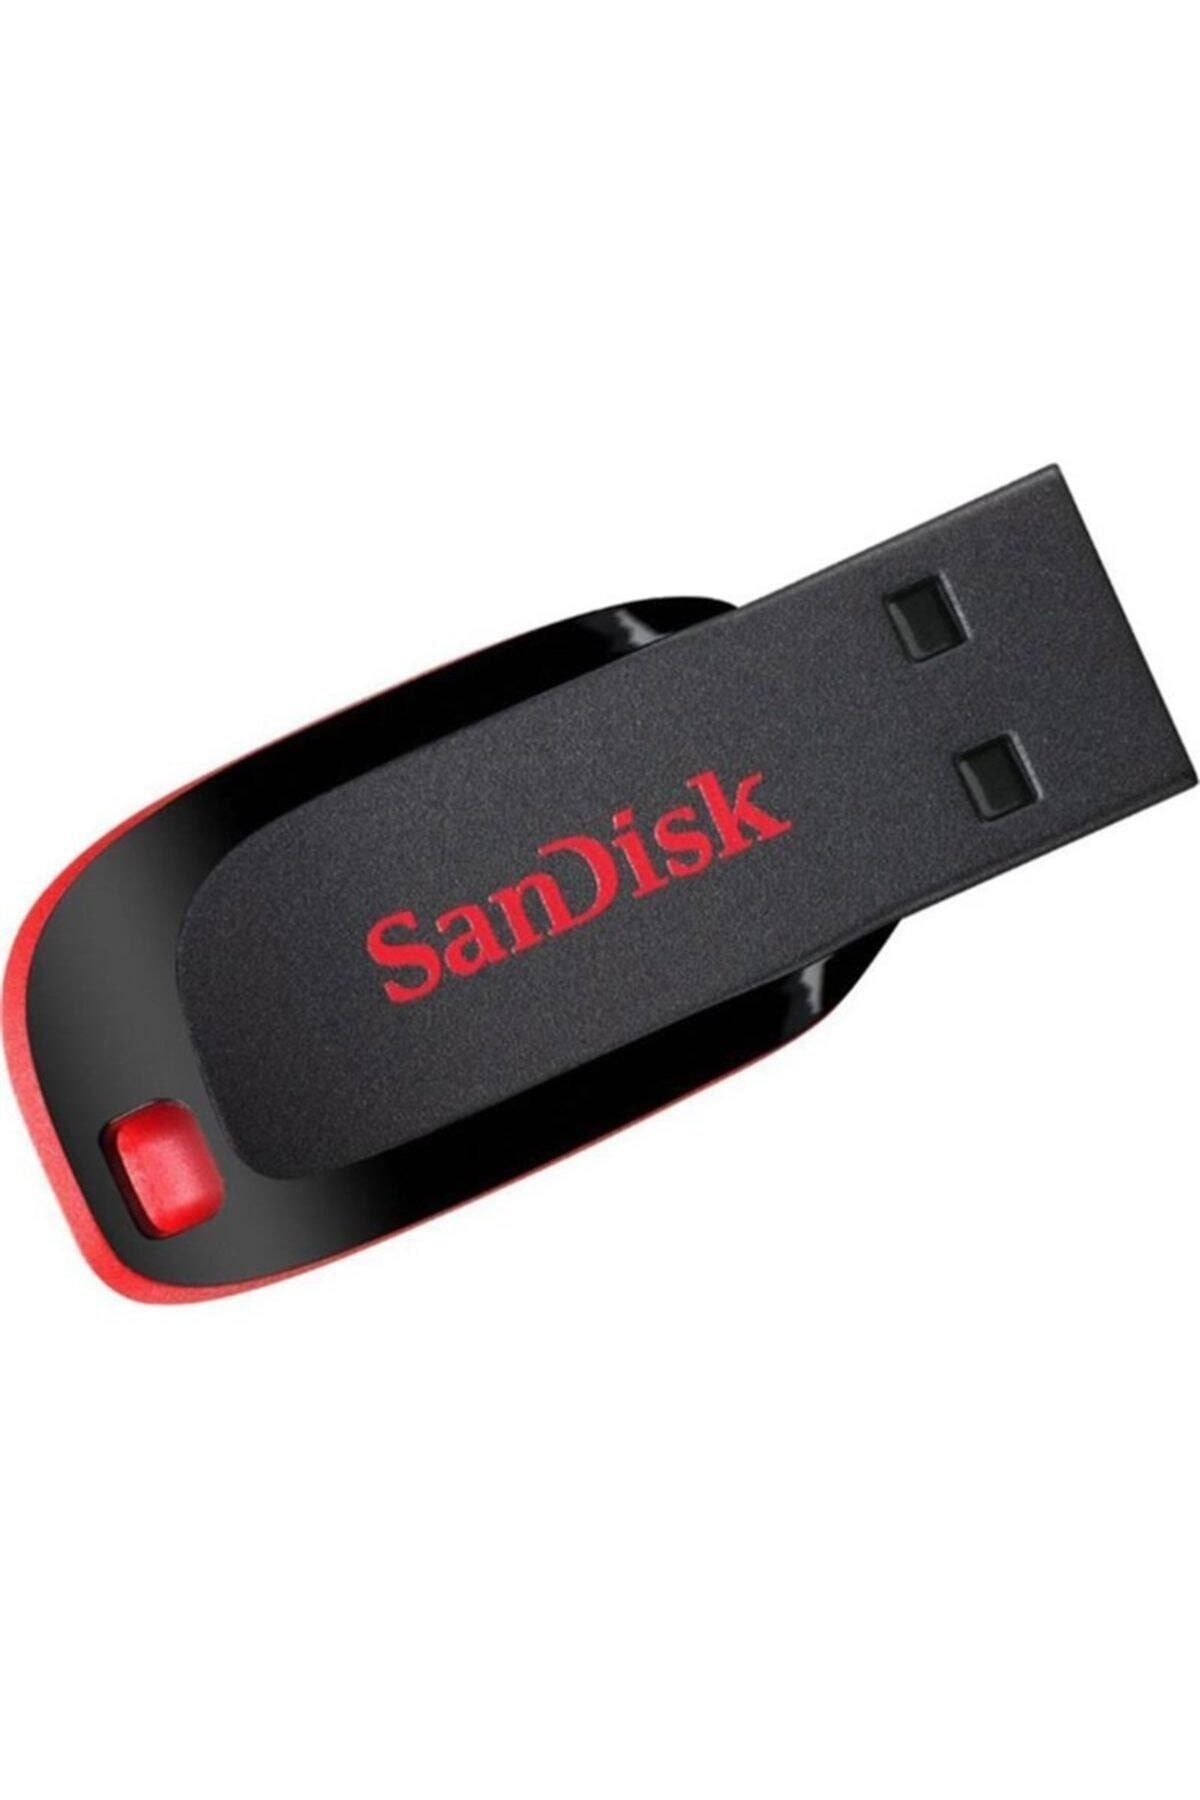 Sandisk Usb Drıve Sdcz50-064g-b35 64 gb